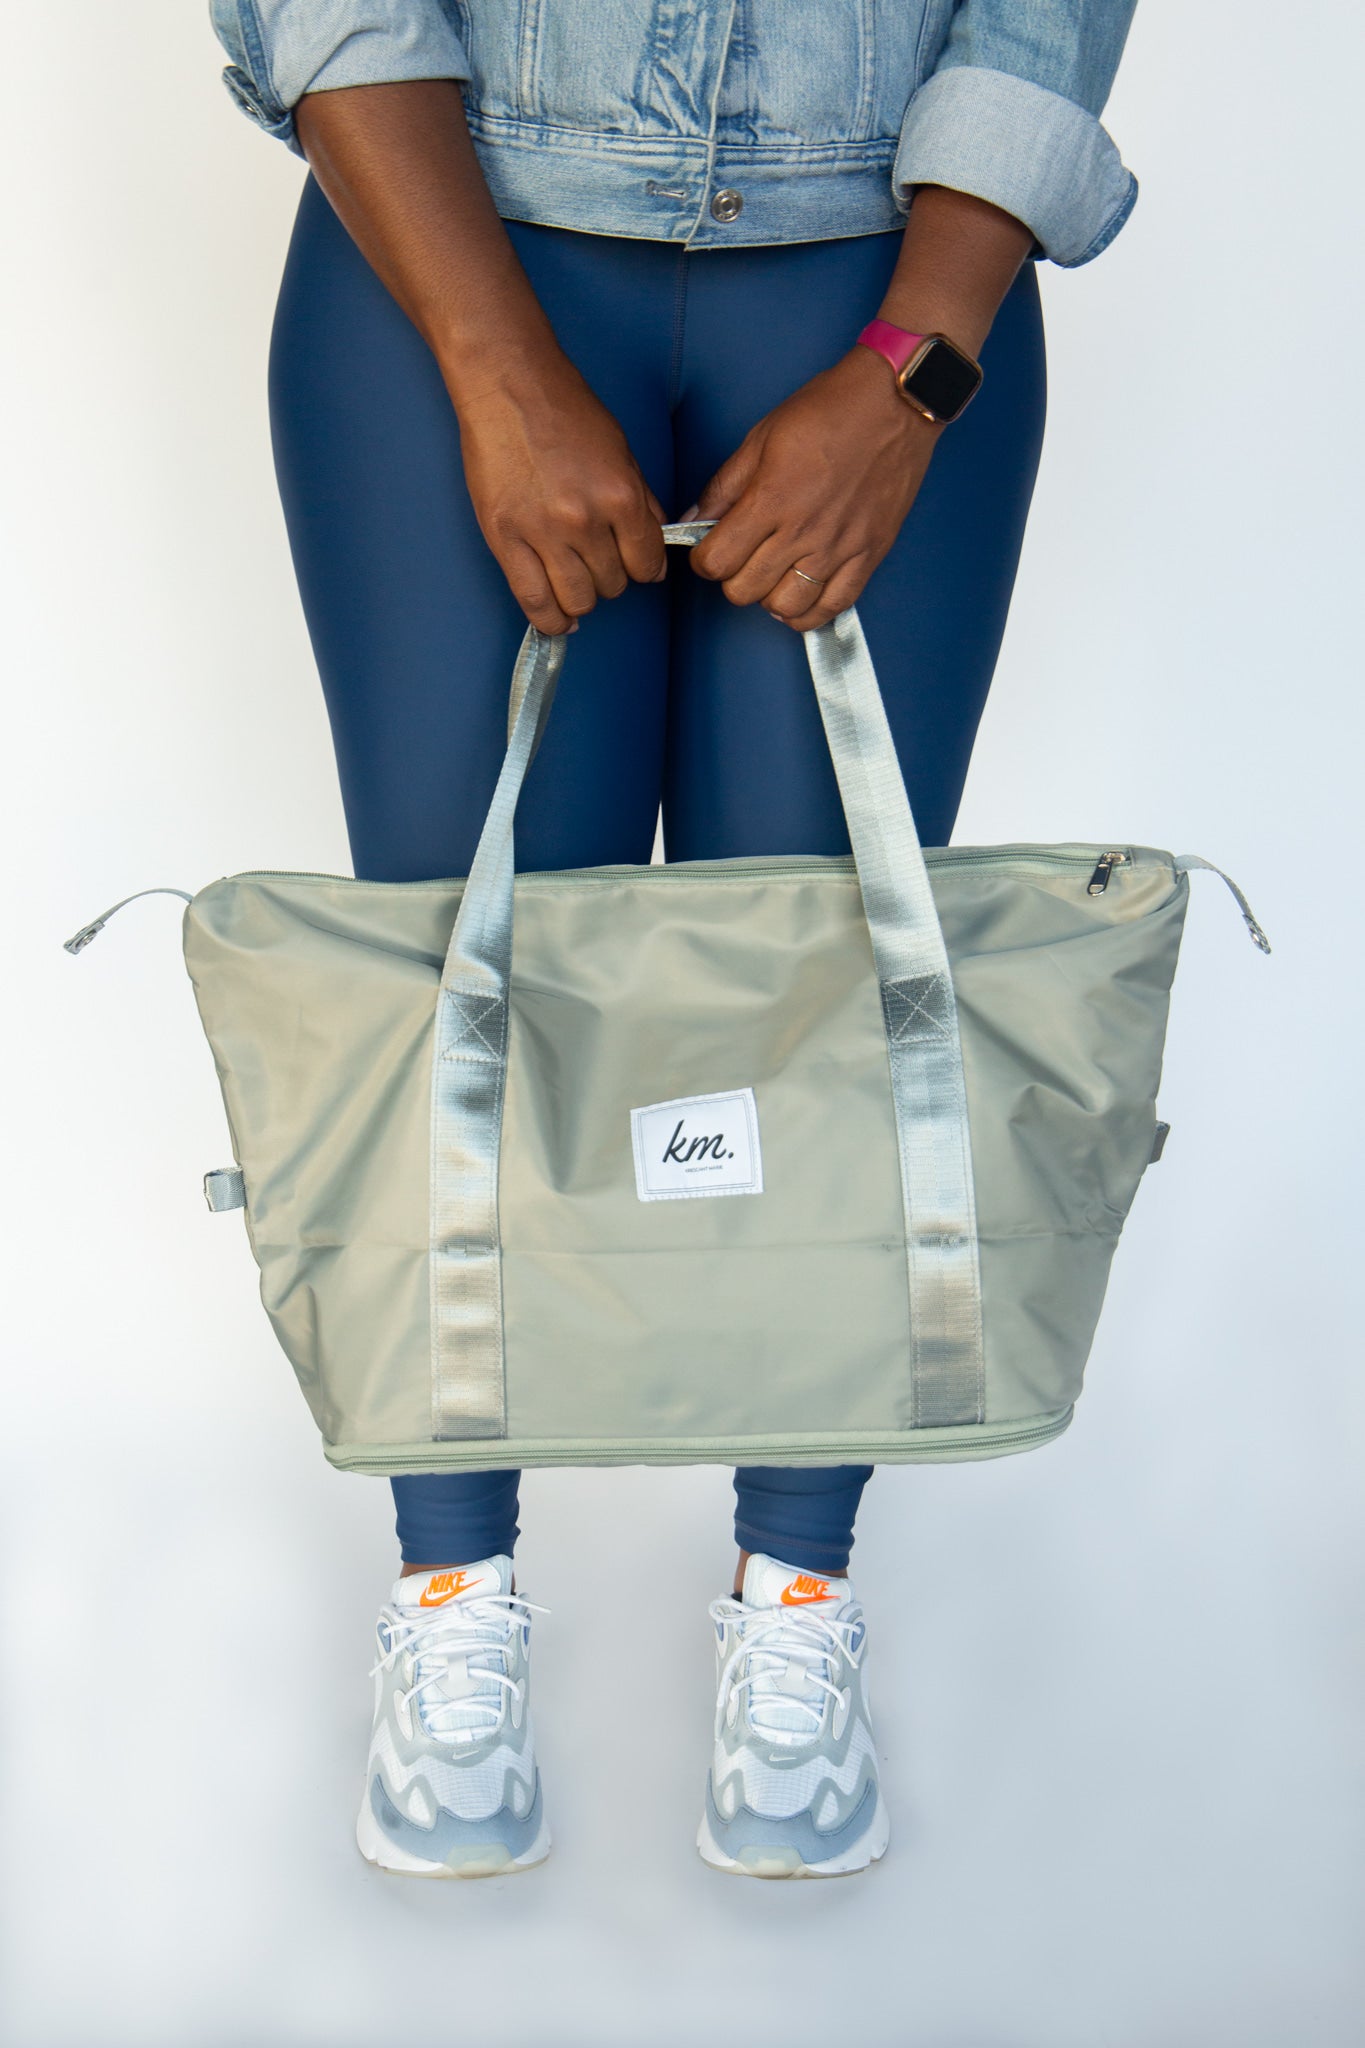 The 'Renee' Carryall bag